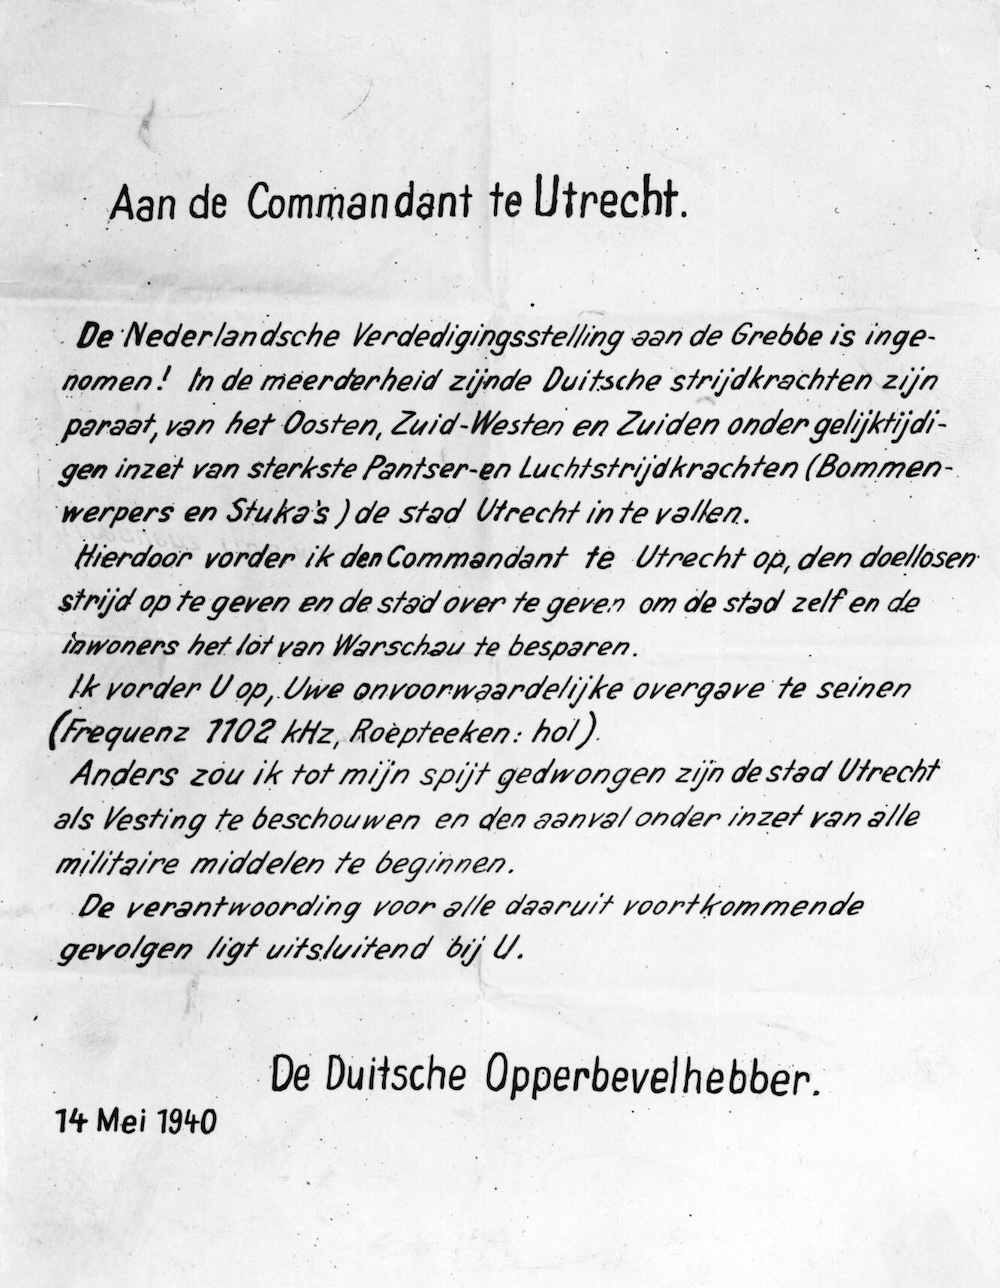 Pamflet op 14 mei 1940 uit een Duits vliegtuig geworpen met de eis tot overgave van de stad Utrecht onder dreiging van een bombardement